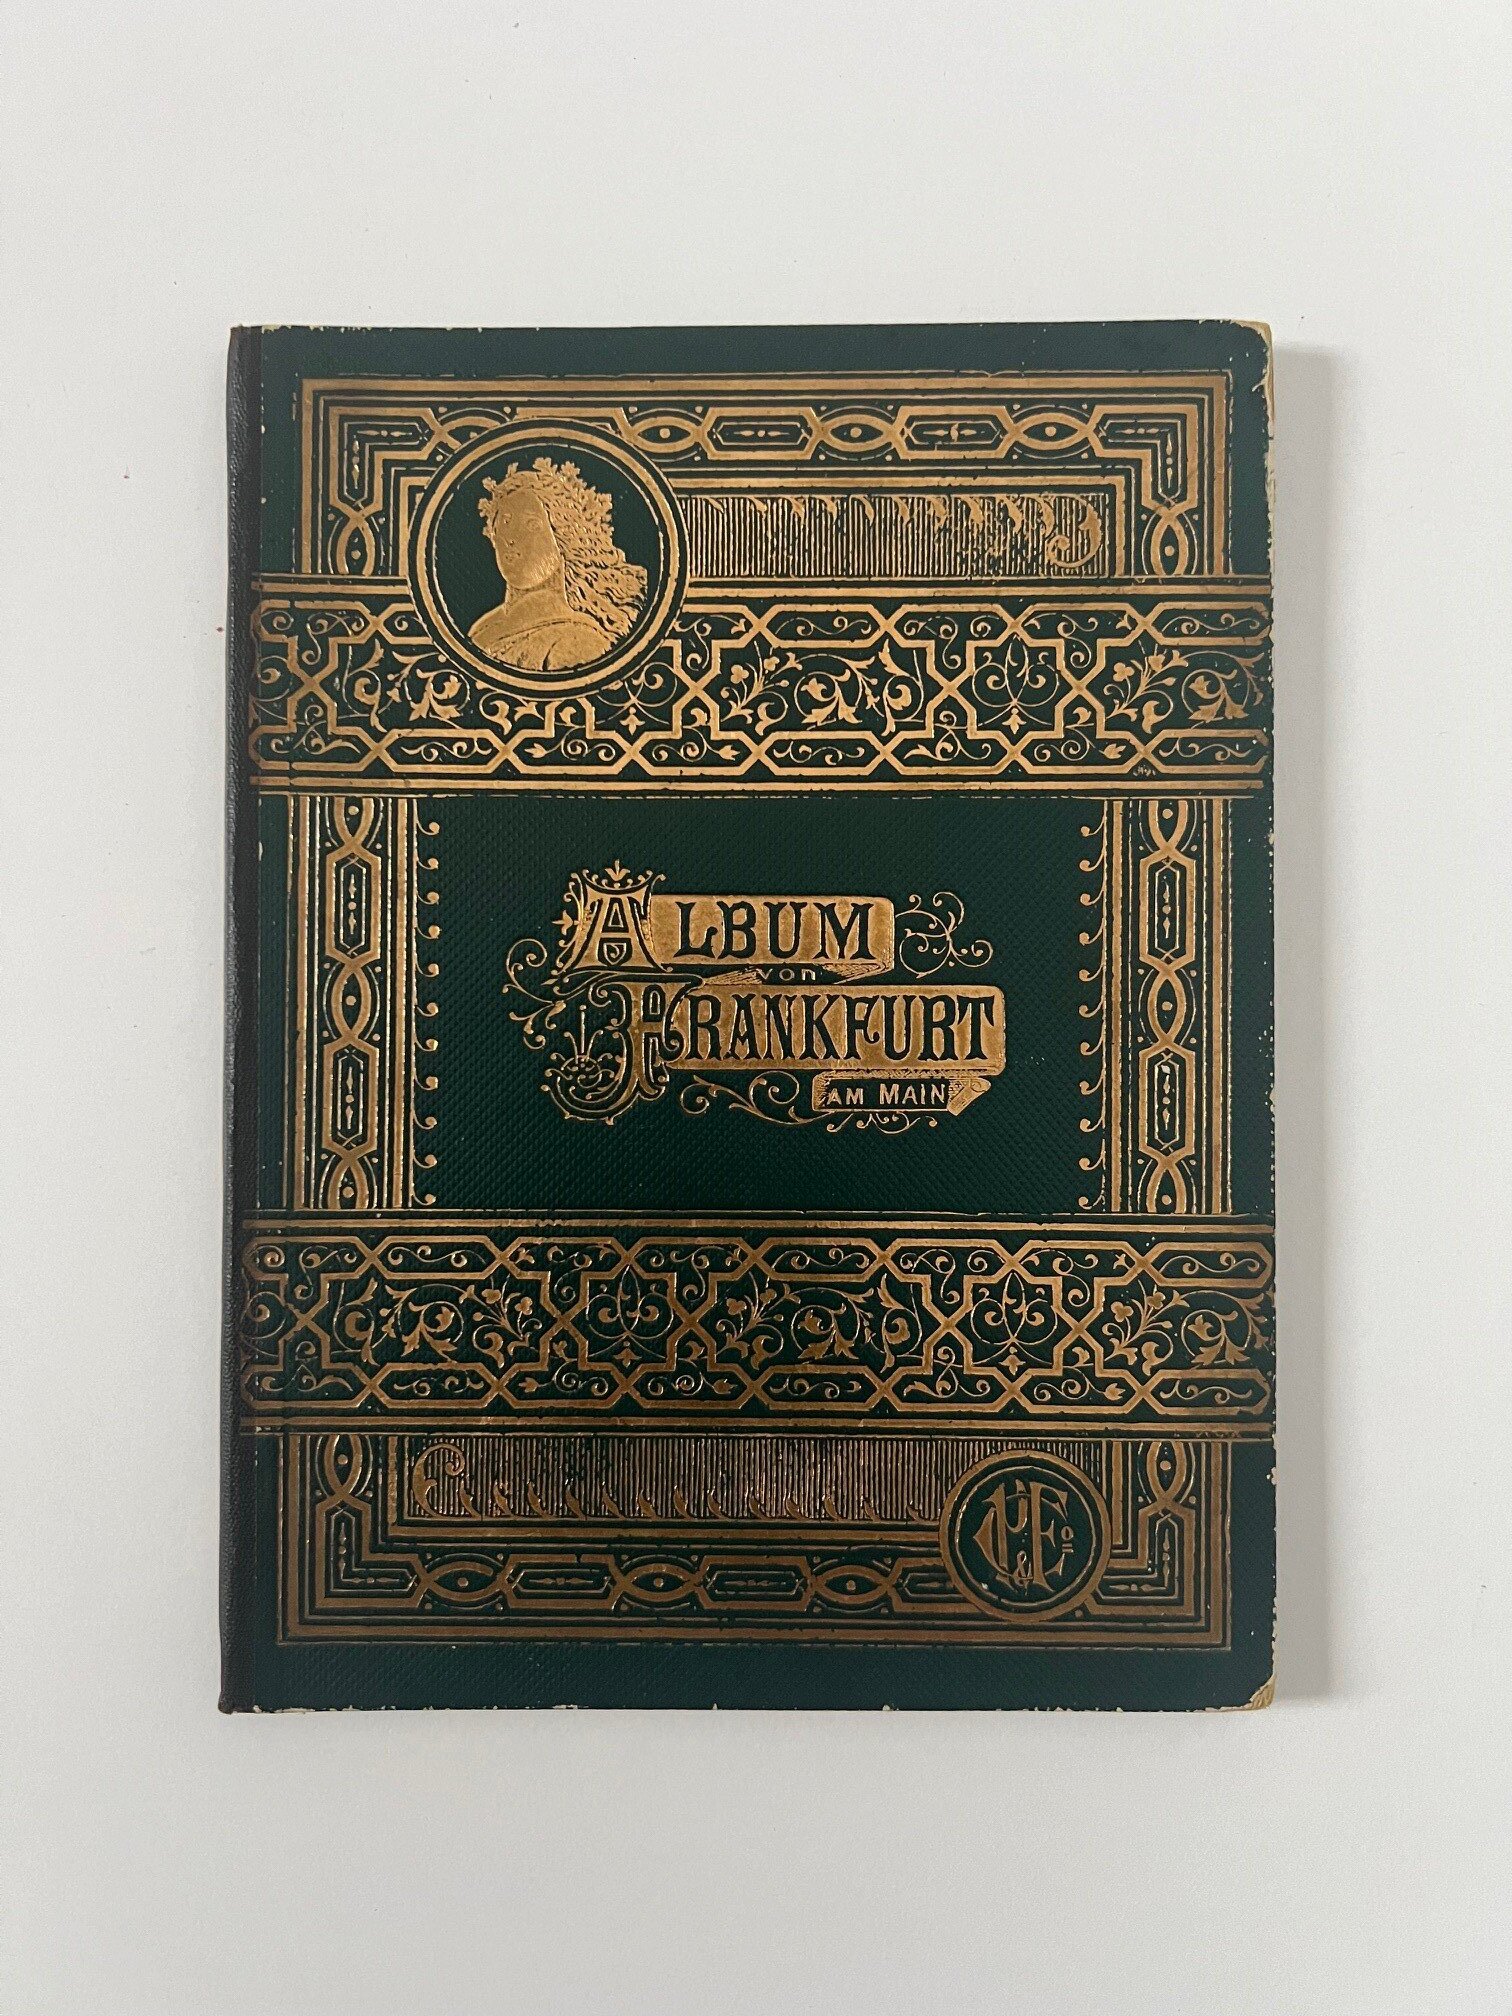 Unbekannter Hersteller, Album von Frankfurt am Main, 31 Lithographien als Leporello, ca. 1890. (Taunus-Rhein-Main - Regionalgeschichtliche Sammlung Dr. Stefan Naas CC BY-NC-SA)